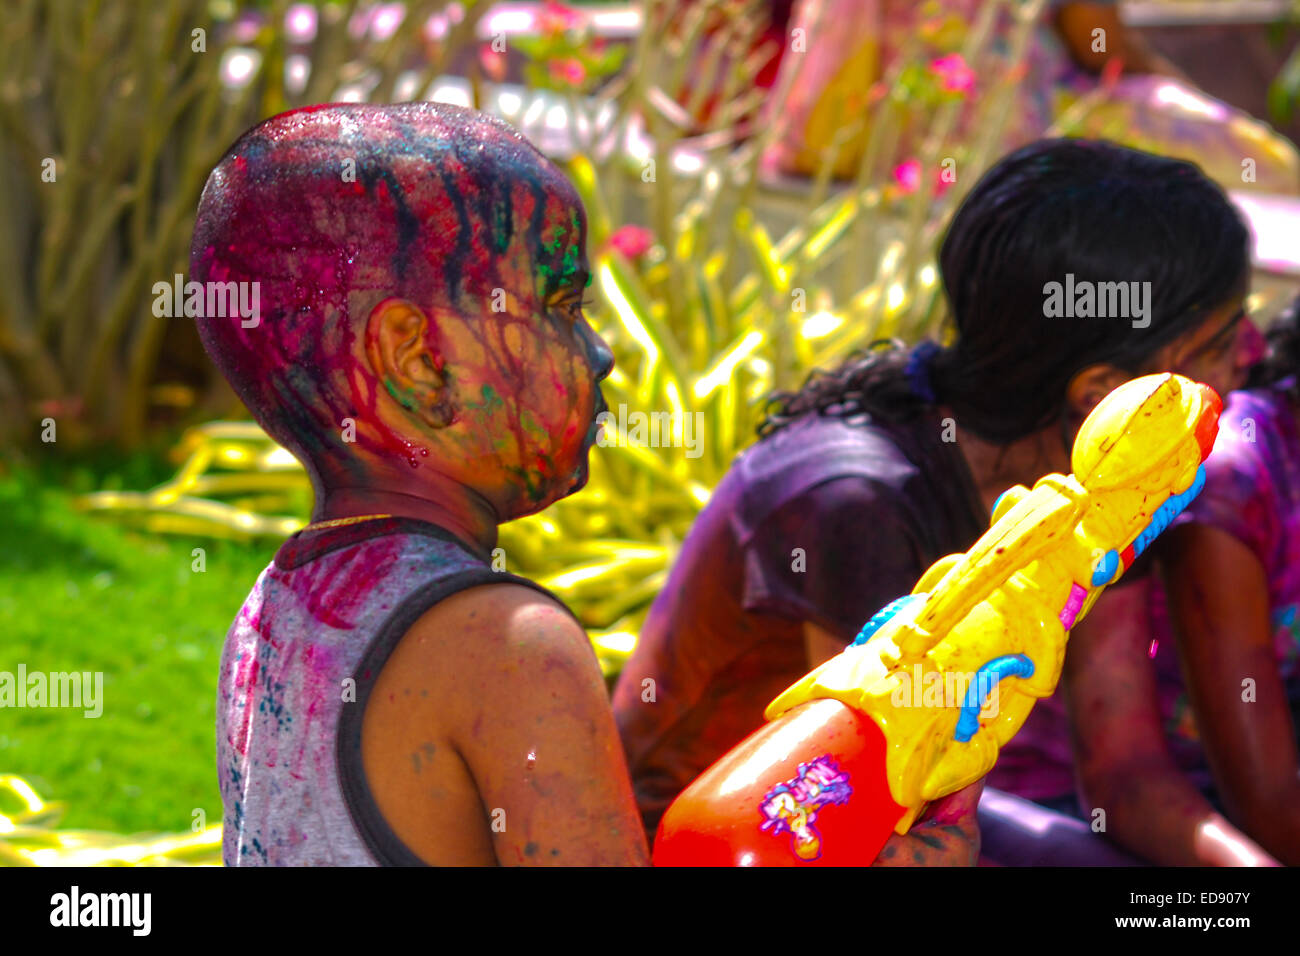 Un jeune garçon indien fait raser la tête couverte de couleurs au printemps fête hindoue holi exerçant également un canon à eau. Banque D'Images